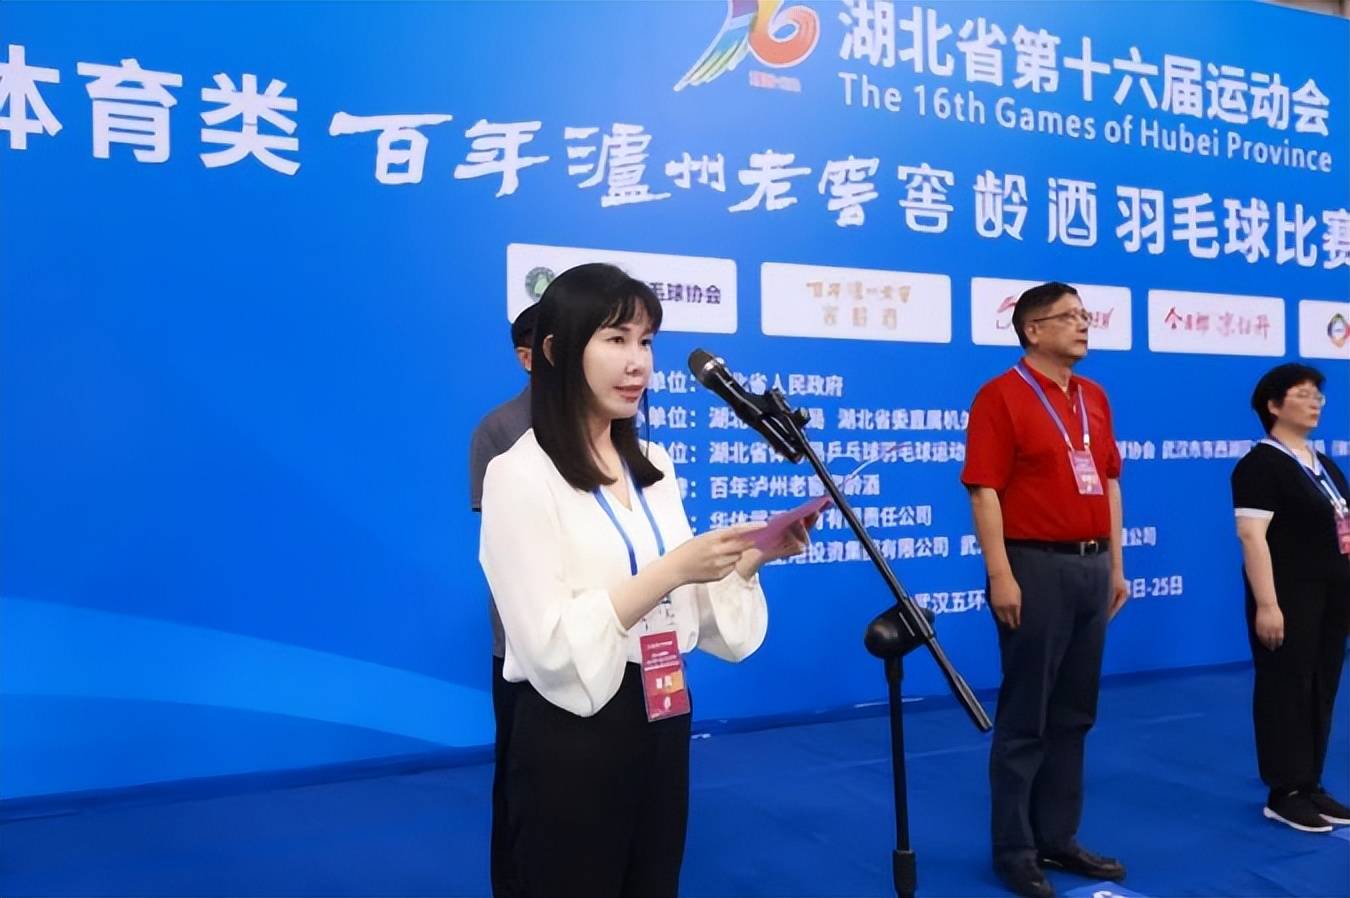 武汉市东西湖区副区长冷莹致欢迎辞,她表示,此次省运会群众体育类